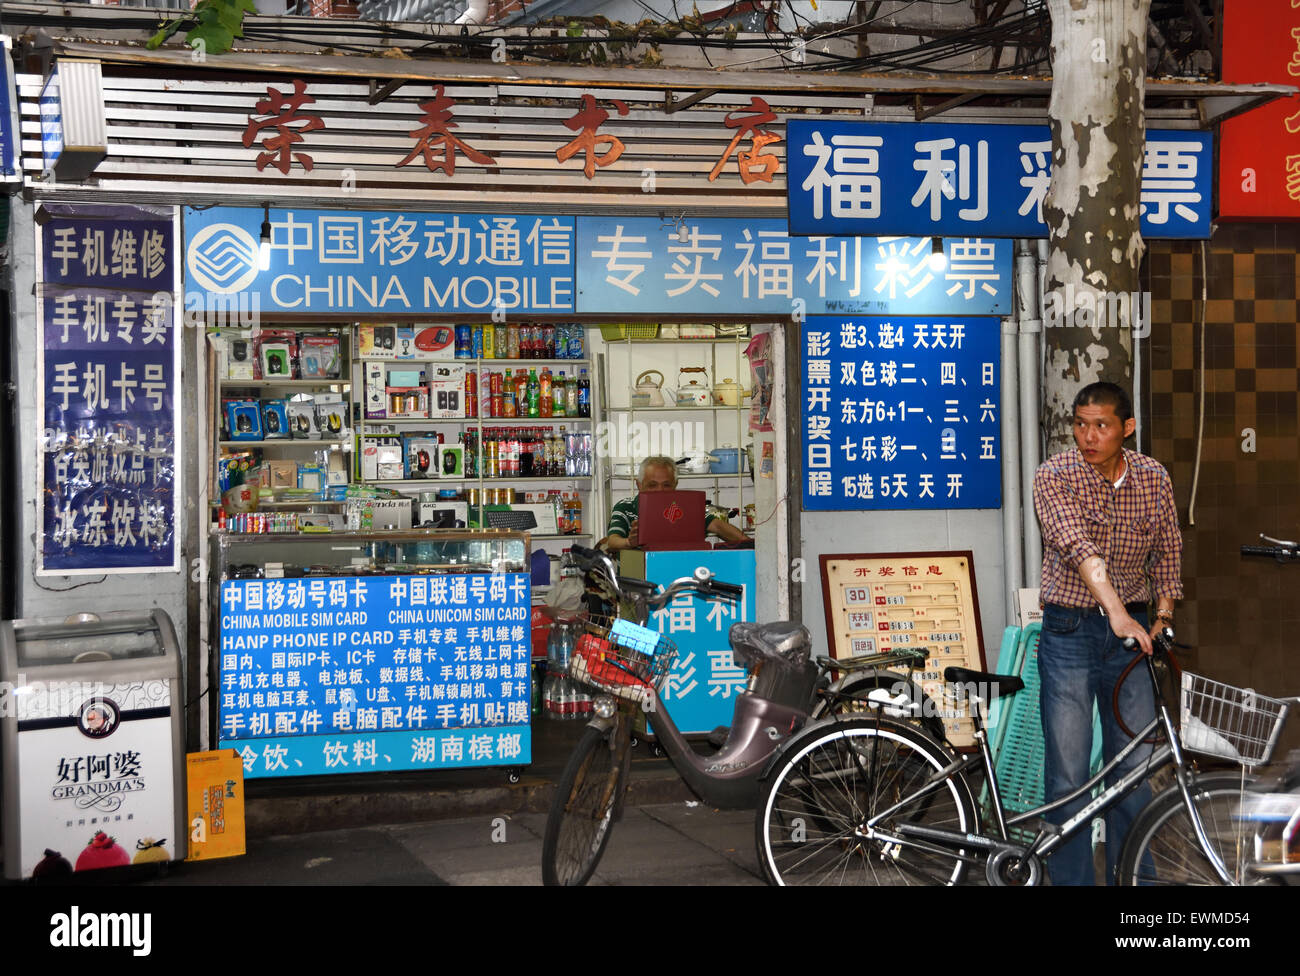 China Mobile shop dans le vieux Shanghai Tianzifang voies étroites qui caractérisent la résidence Shikumen Concession Française de Shanghai Luwan Xintia Banque D'Images